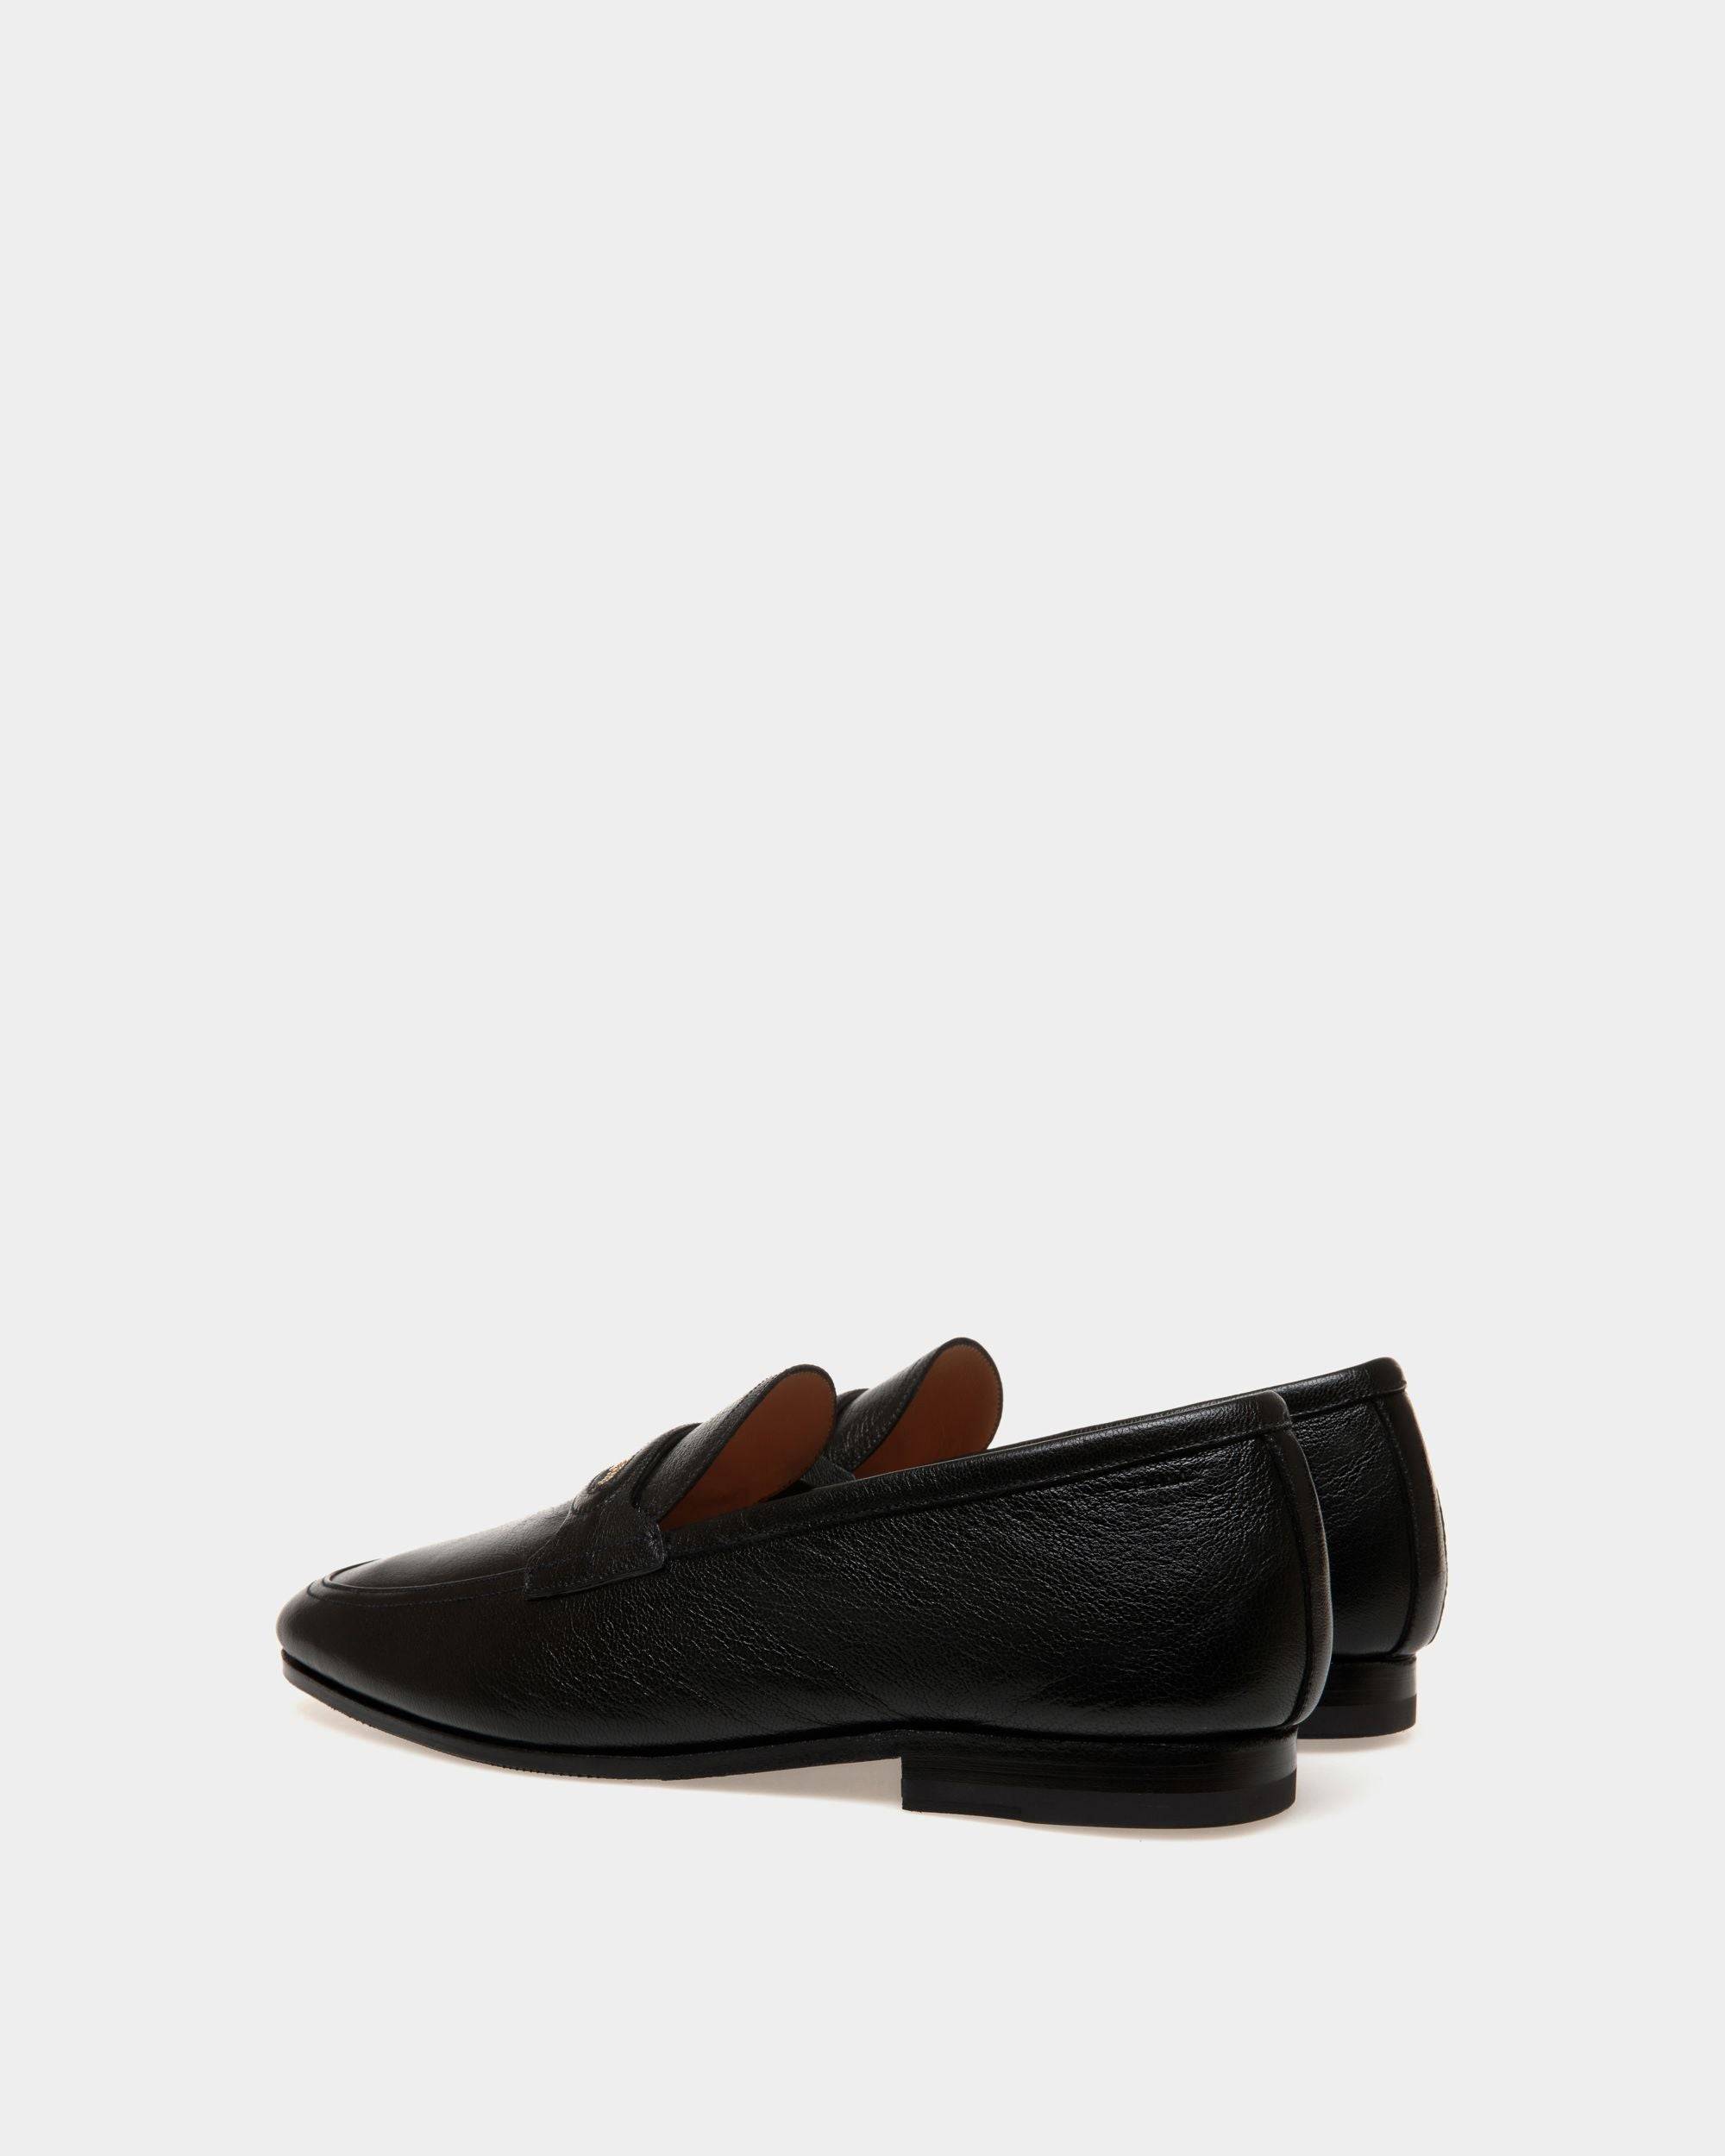 Plume | Loafers für Herren aus genarbtem Leder in Schwarz | Bally | Still Life 3/4 Rückseite